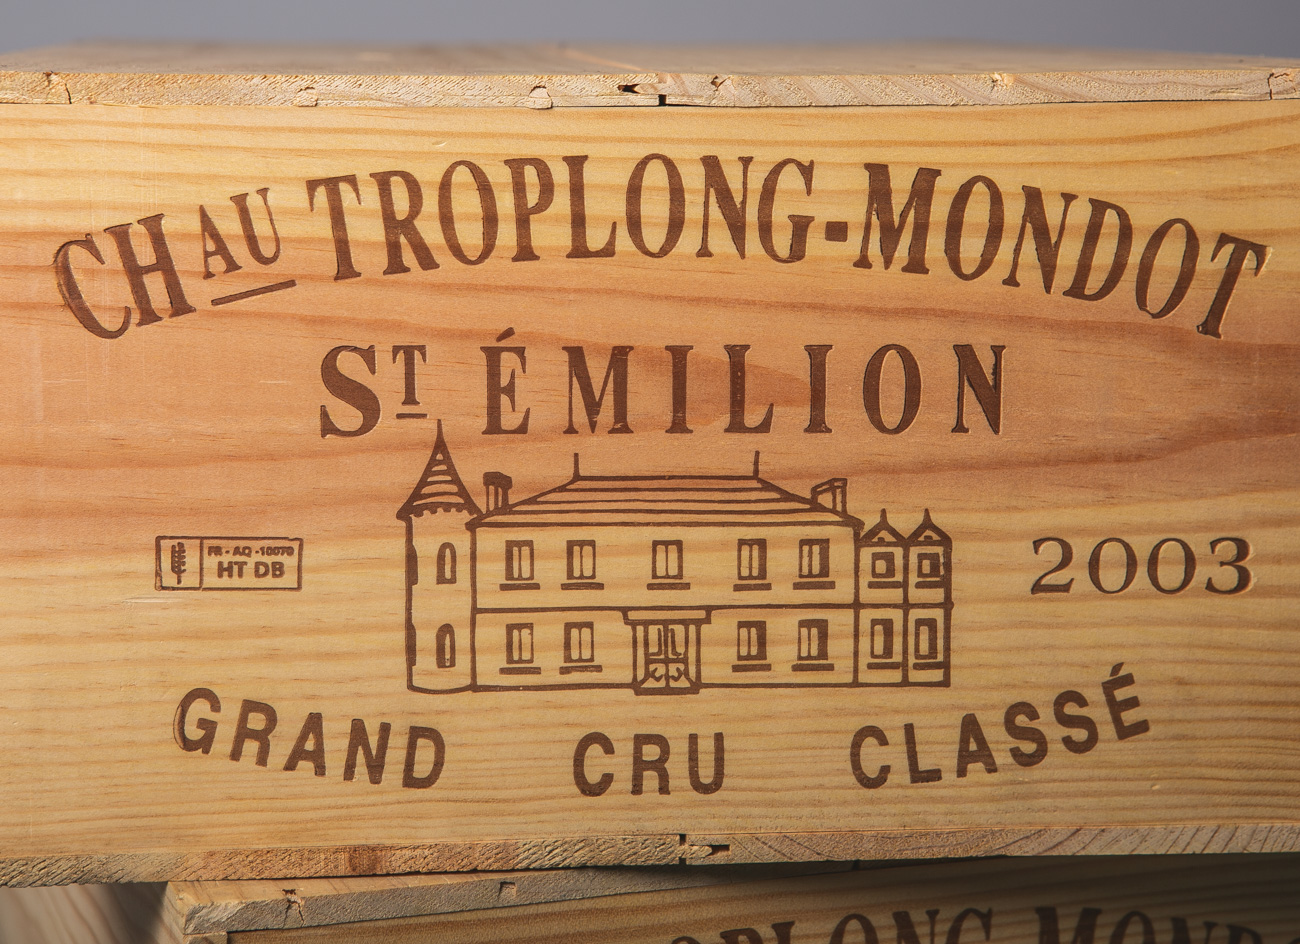 24 Flaschen von Chateau Toplong Mondot (2003), Grand Cru Classé, Rotwein, 2 Kisten à 12Flaschen,